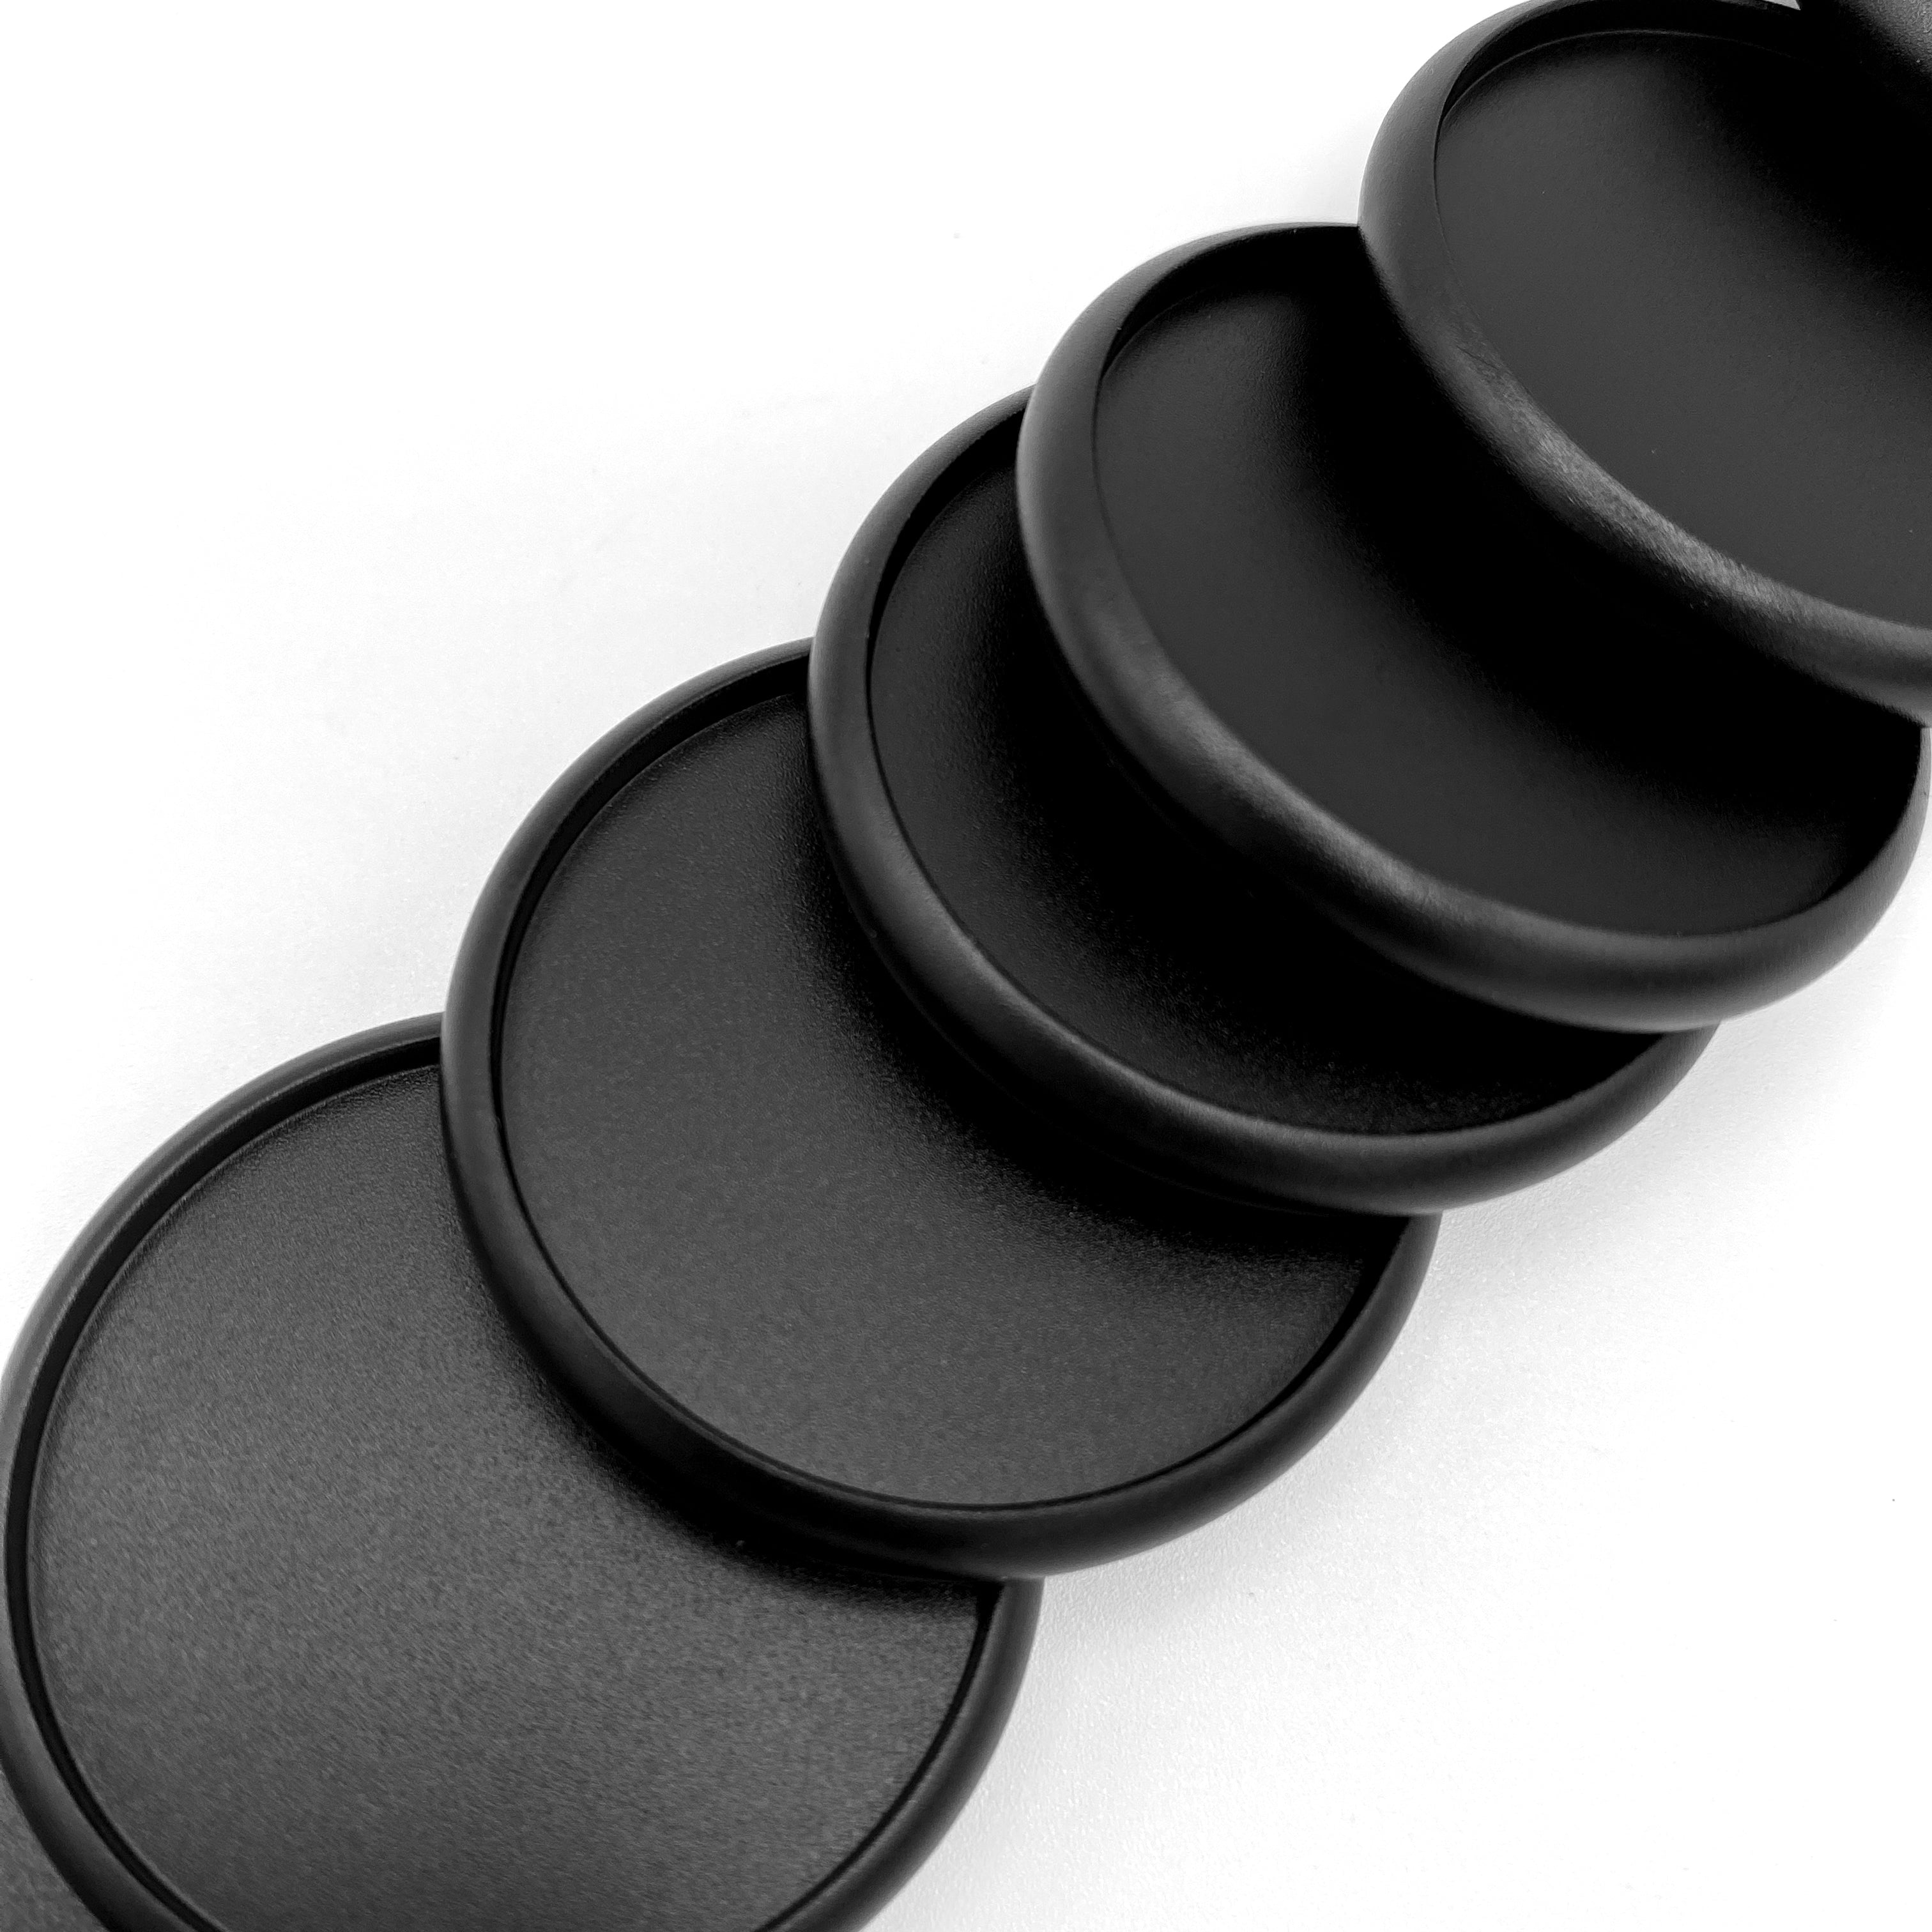 Close up of black discs